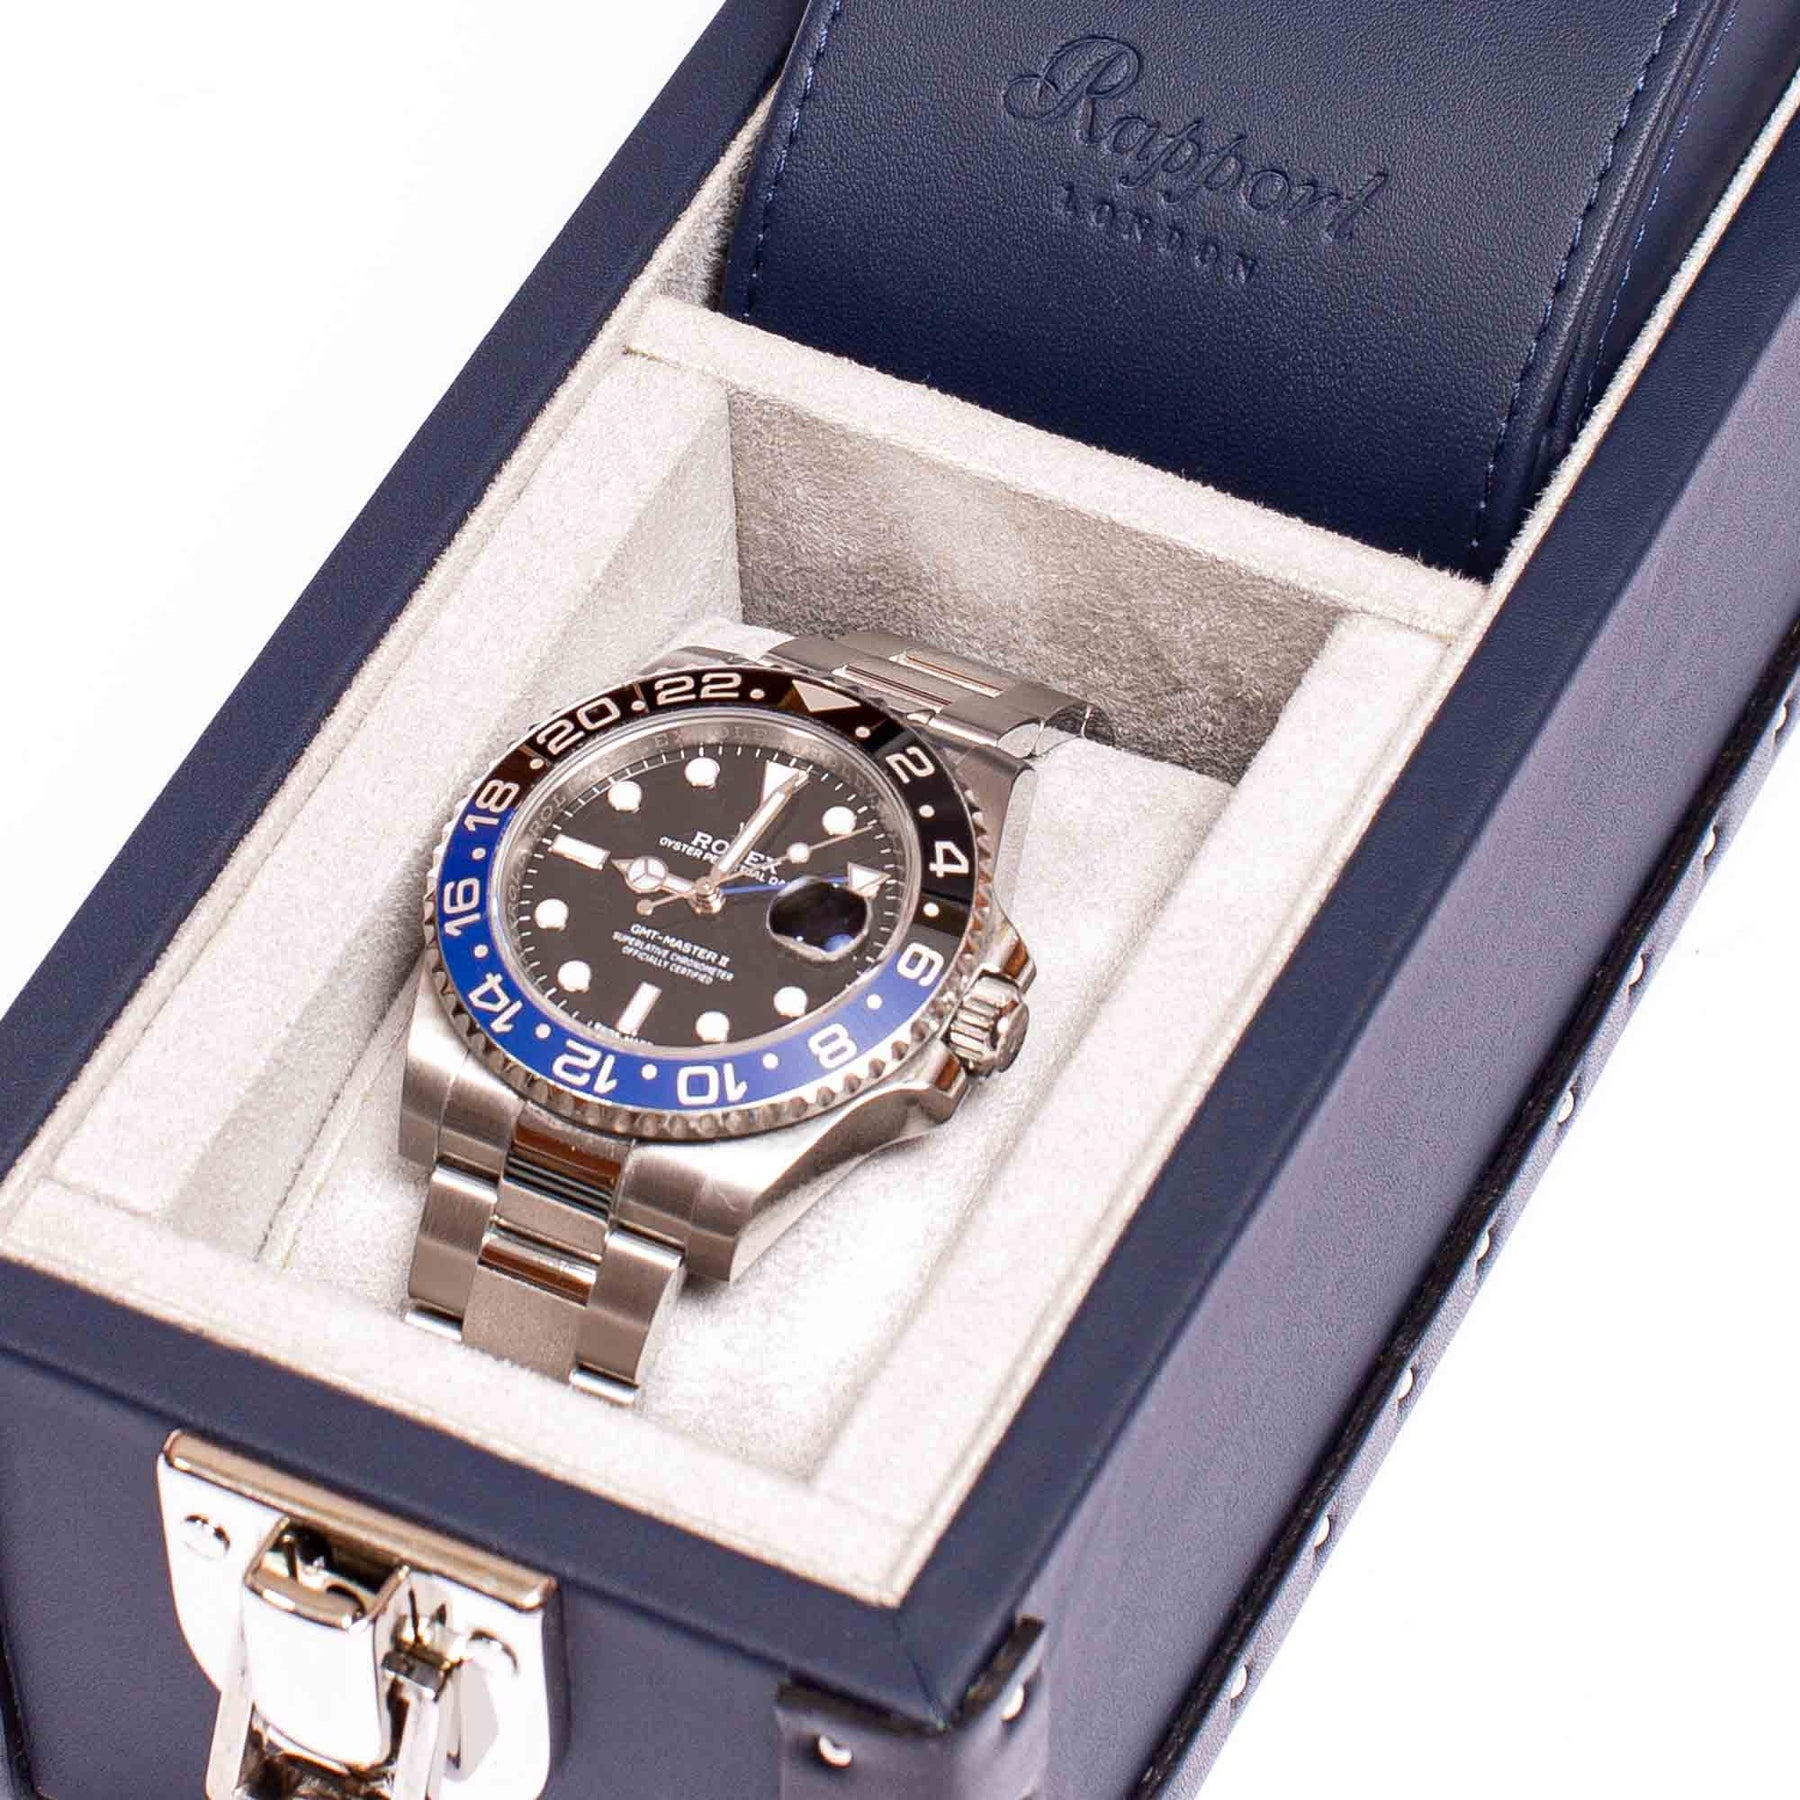 rapport-2-piece-watch-box-kensington-blue-l320 – 4.0